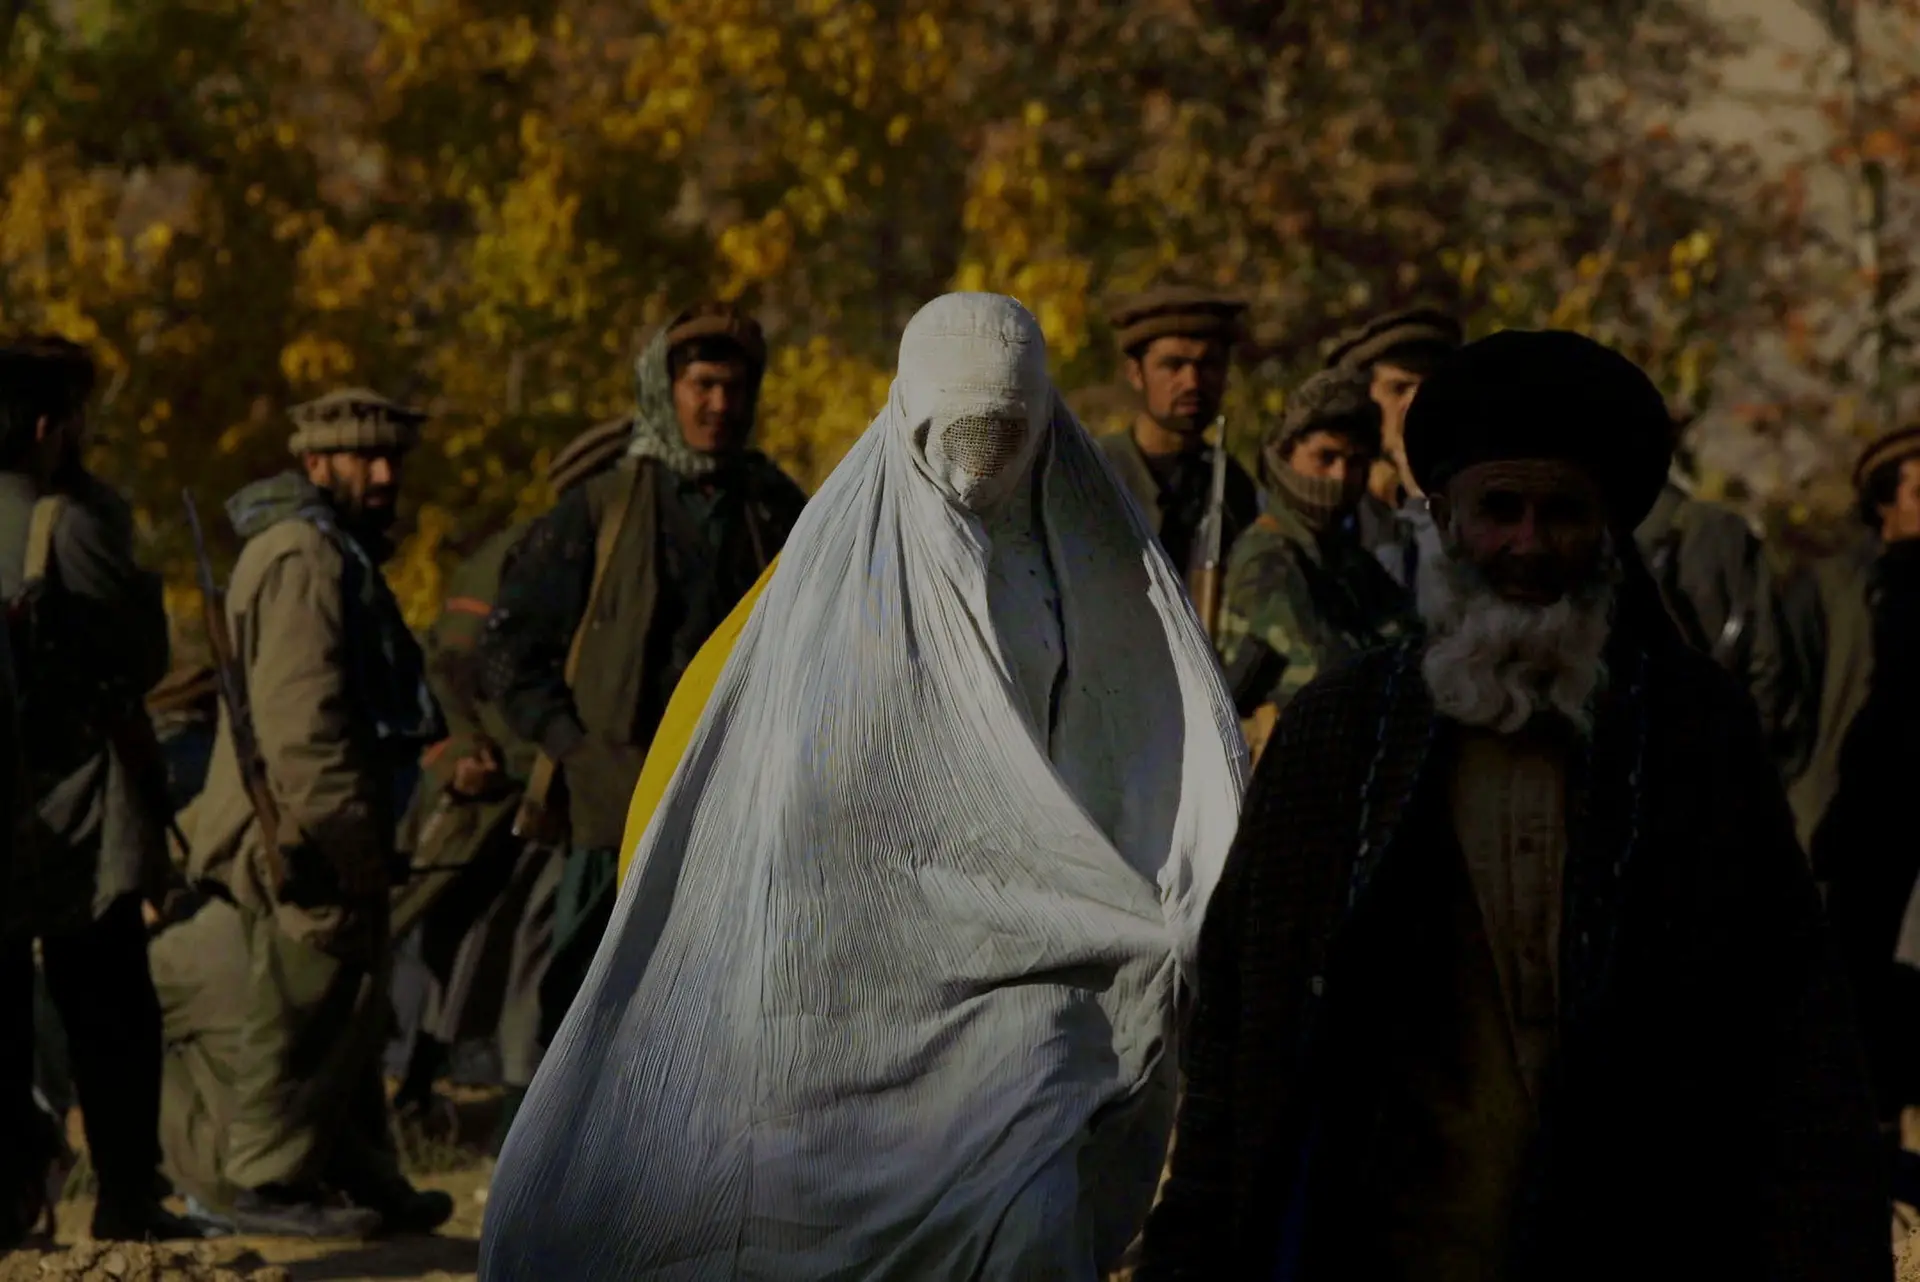 Afeganistão: três ONG suspendem operações após proibição de mulheres